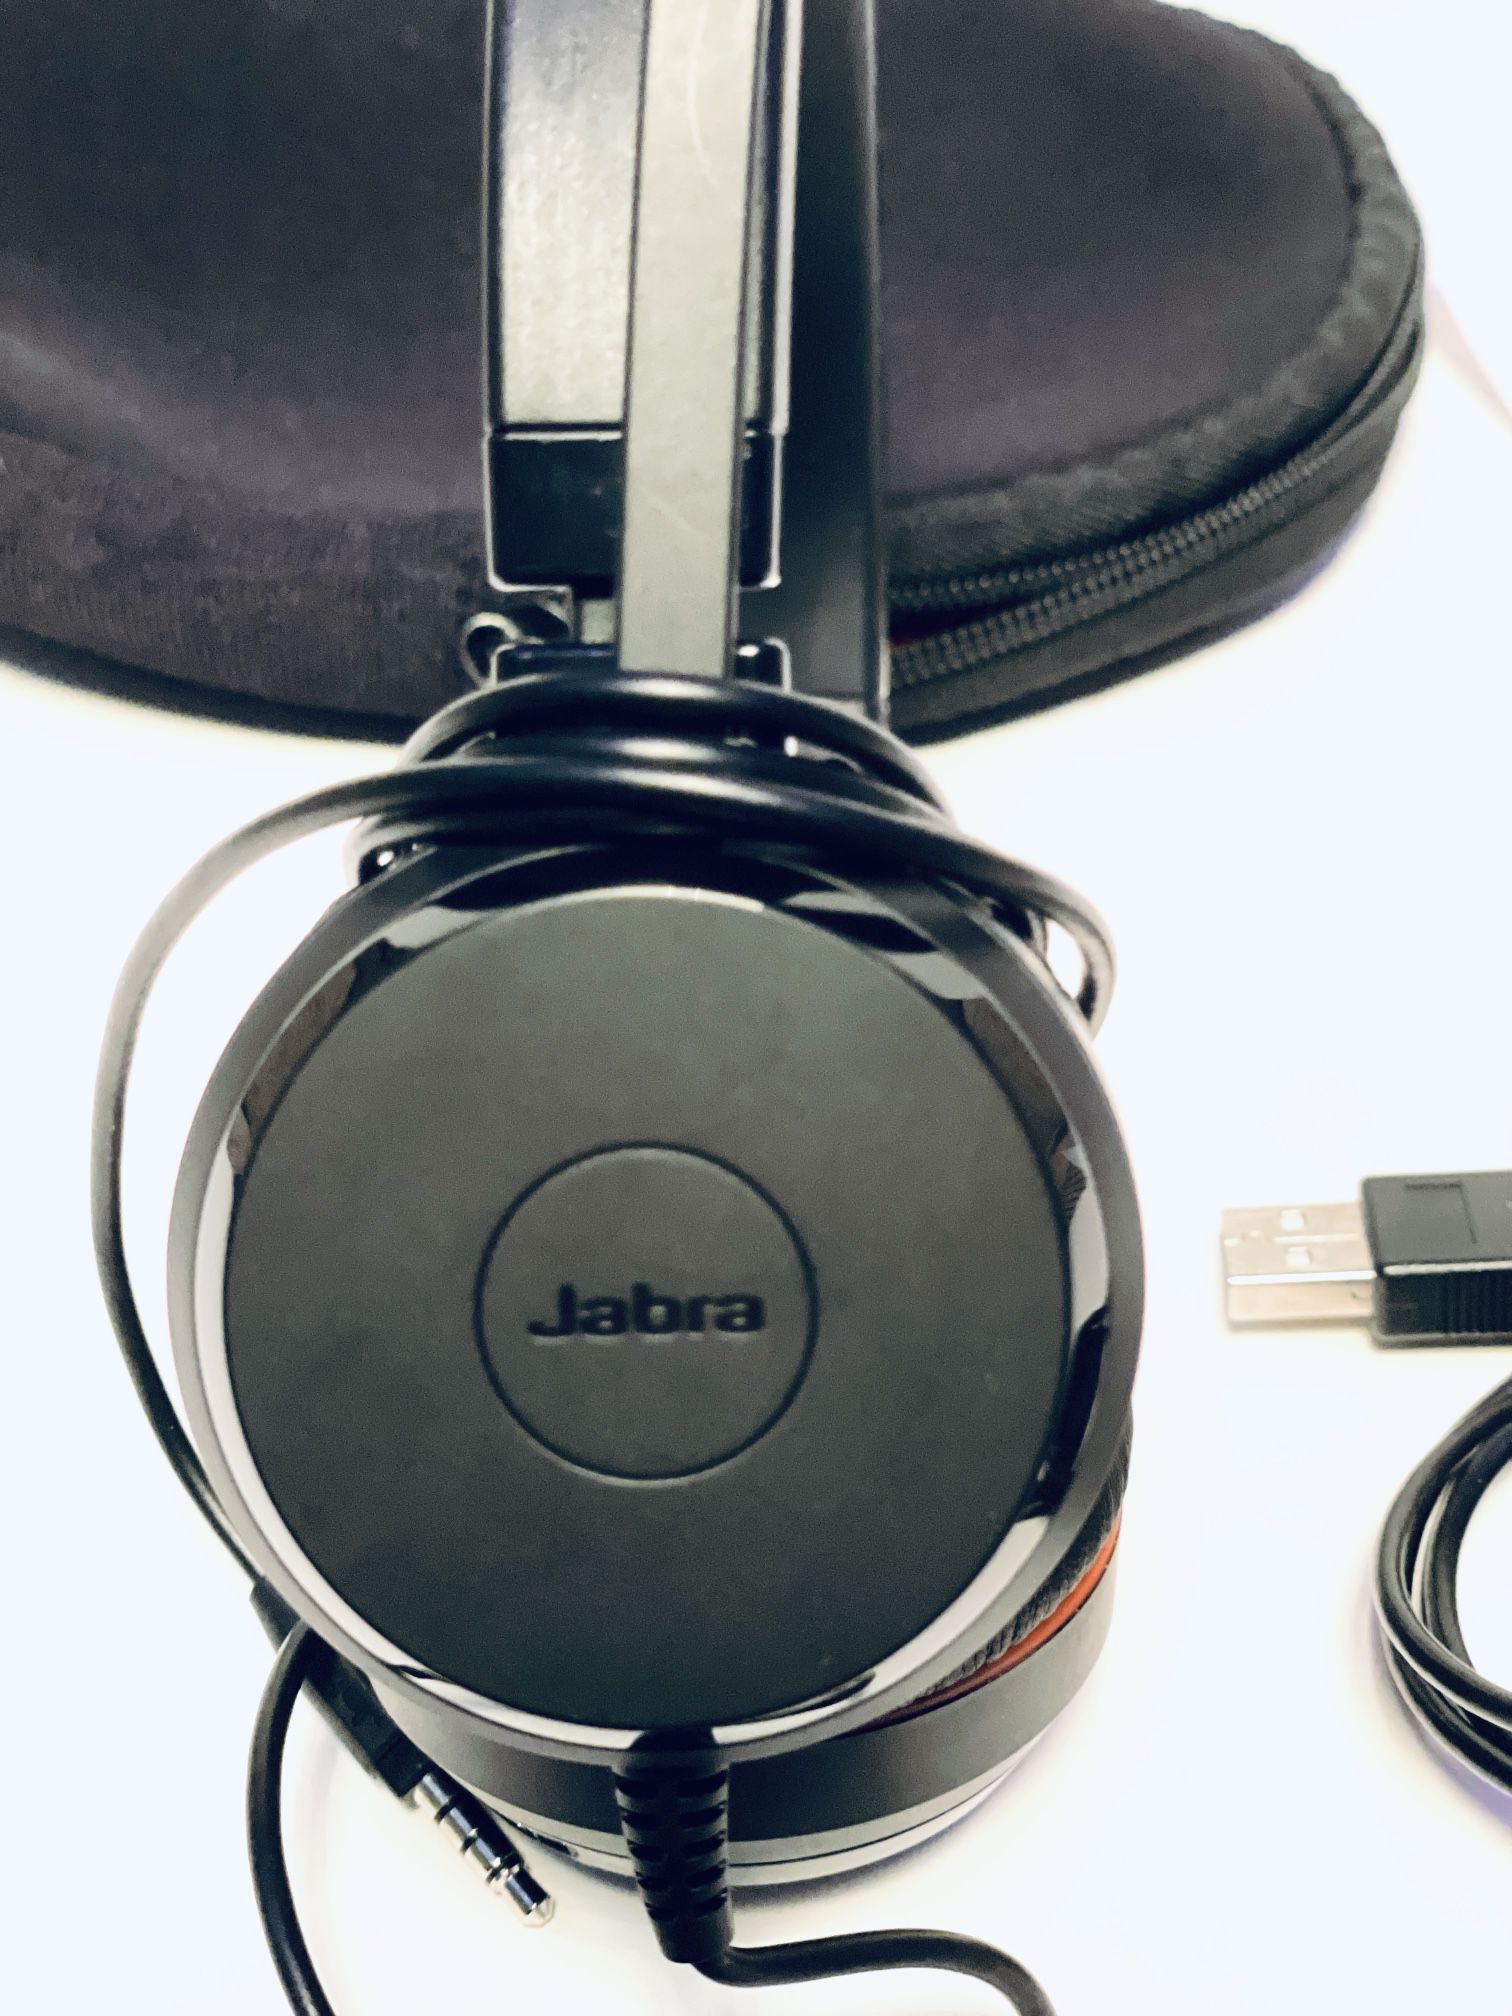 Jabra Evolve 30II headset